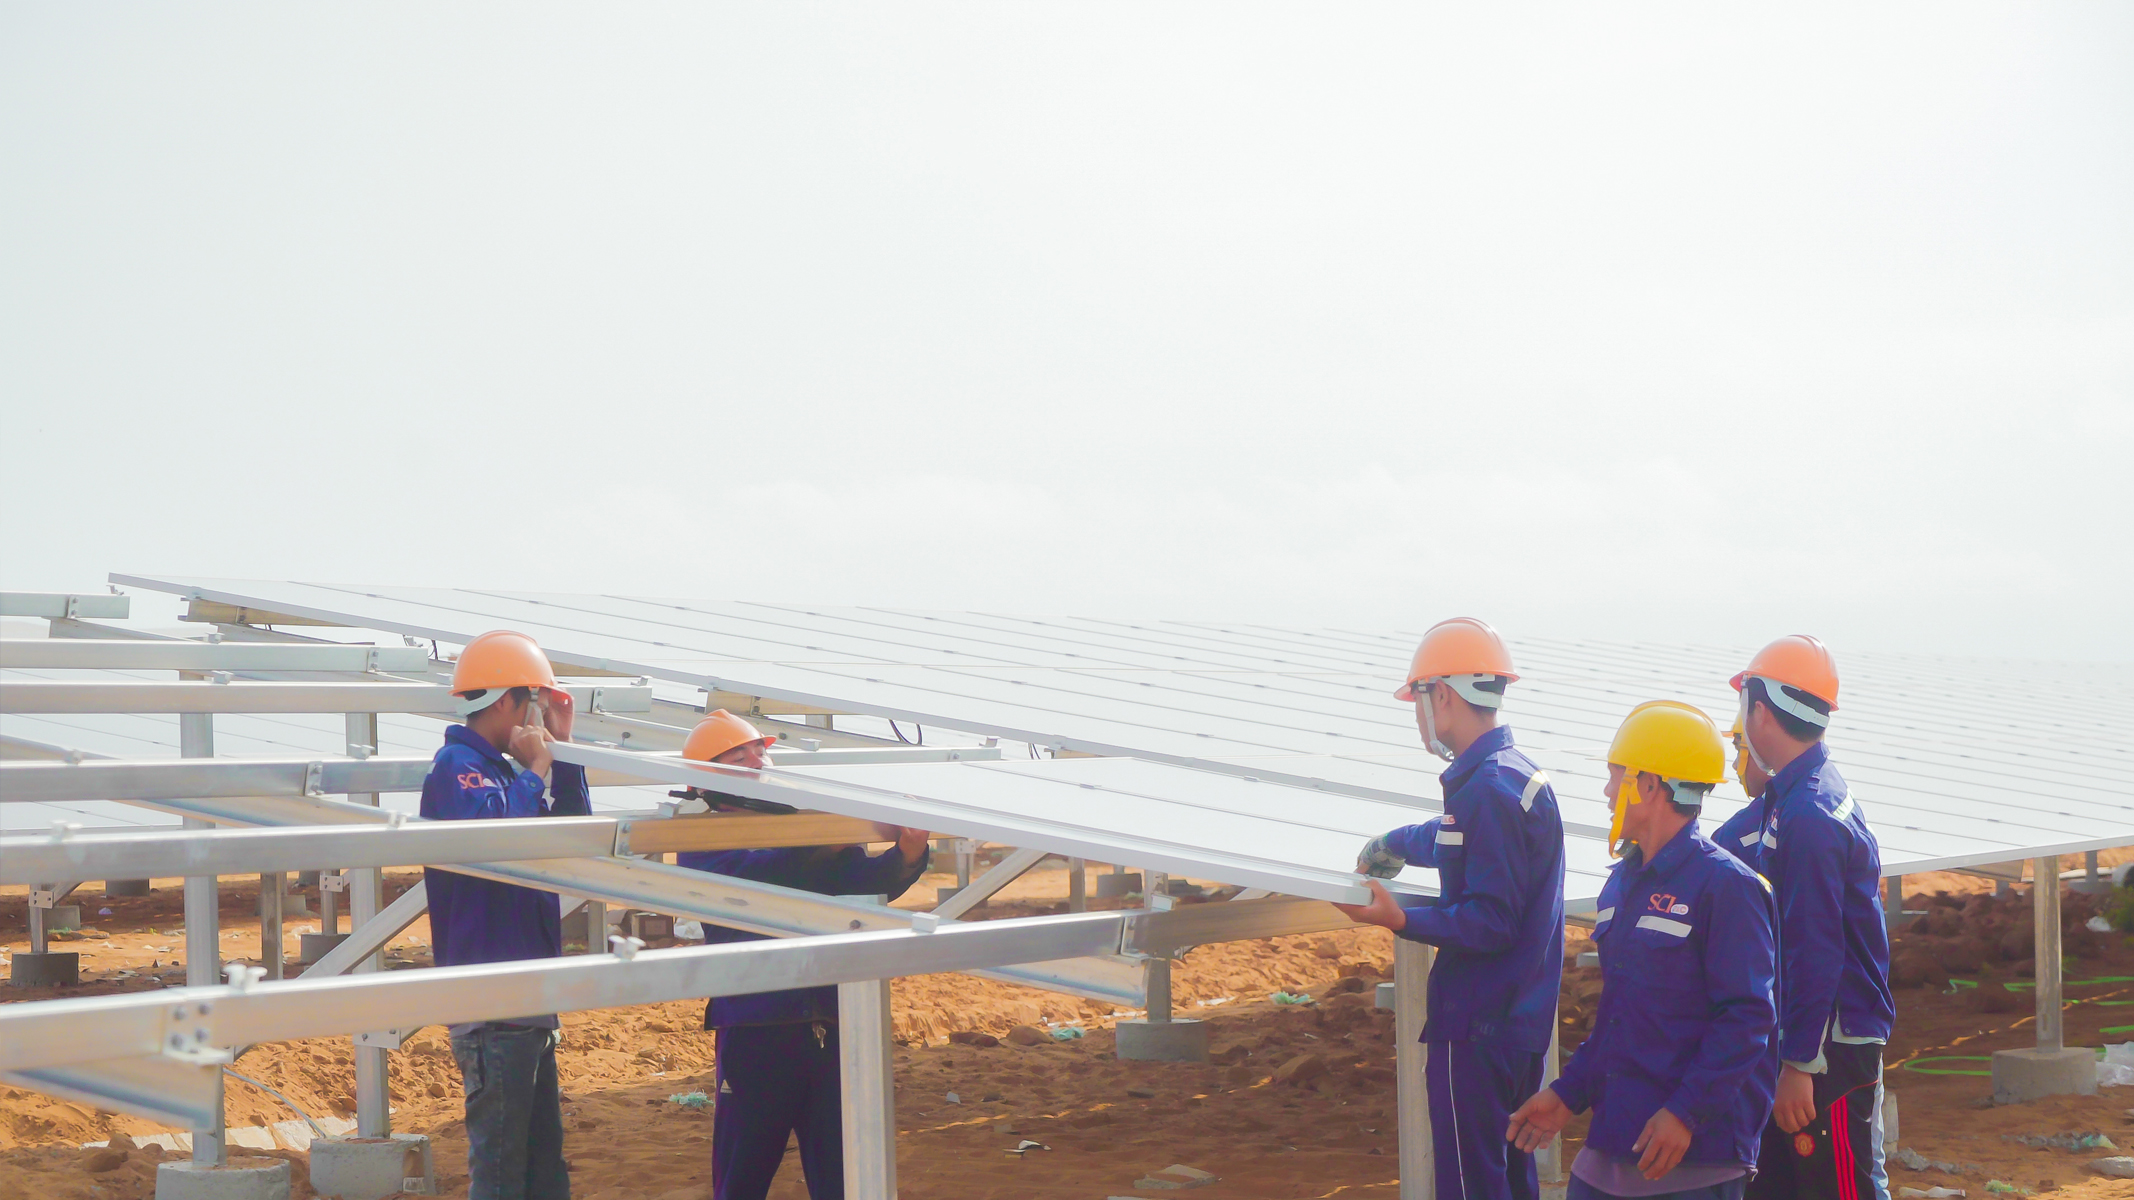 Trang trại điện mặt trời Gelex Ninh Thuận